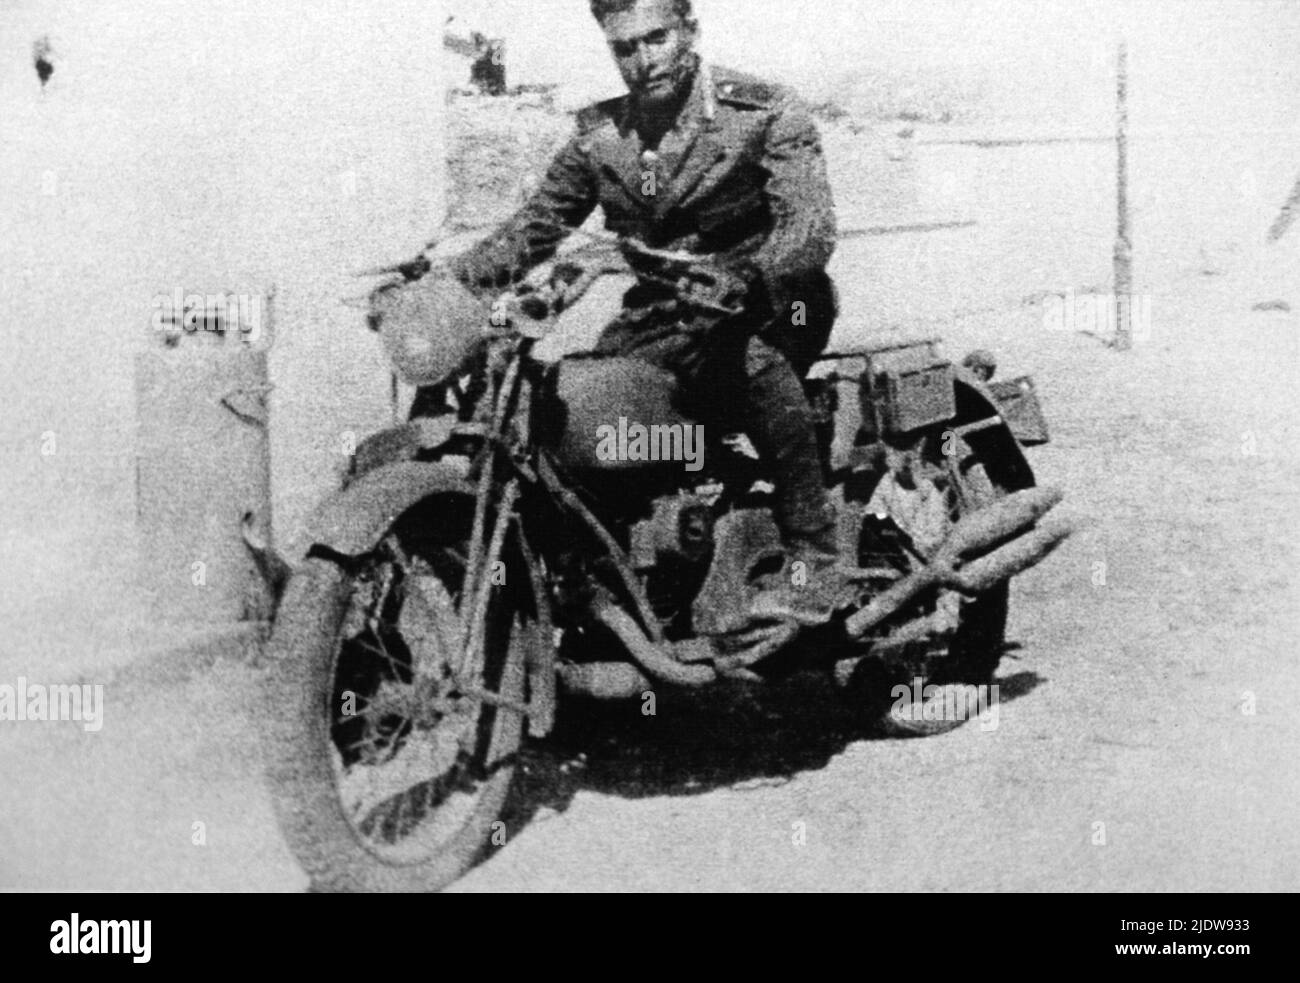 1940 , Tripoli , Lybia : The military vicebrigadiere Carabiniere SALVO D'ACQUISTO ( 1920 - 1943 ) during the military service. Killed for save 22 hostages from Nazi , Medaglia d' Oro al Valor Militare - EROE - HERO - WORLD WAR II - WW 2nd - SECONDA GUERRA MONDIALE - nazismo - nazism - RESISTENZA - processo di beatificazione  - portrait - ritratto - bicher - moto - motocicletta - motociclista - DACQUISTO - D' ACQUISTO ----  Archivio GBB Stock Photo